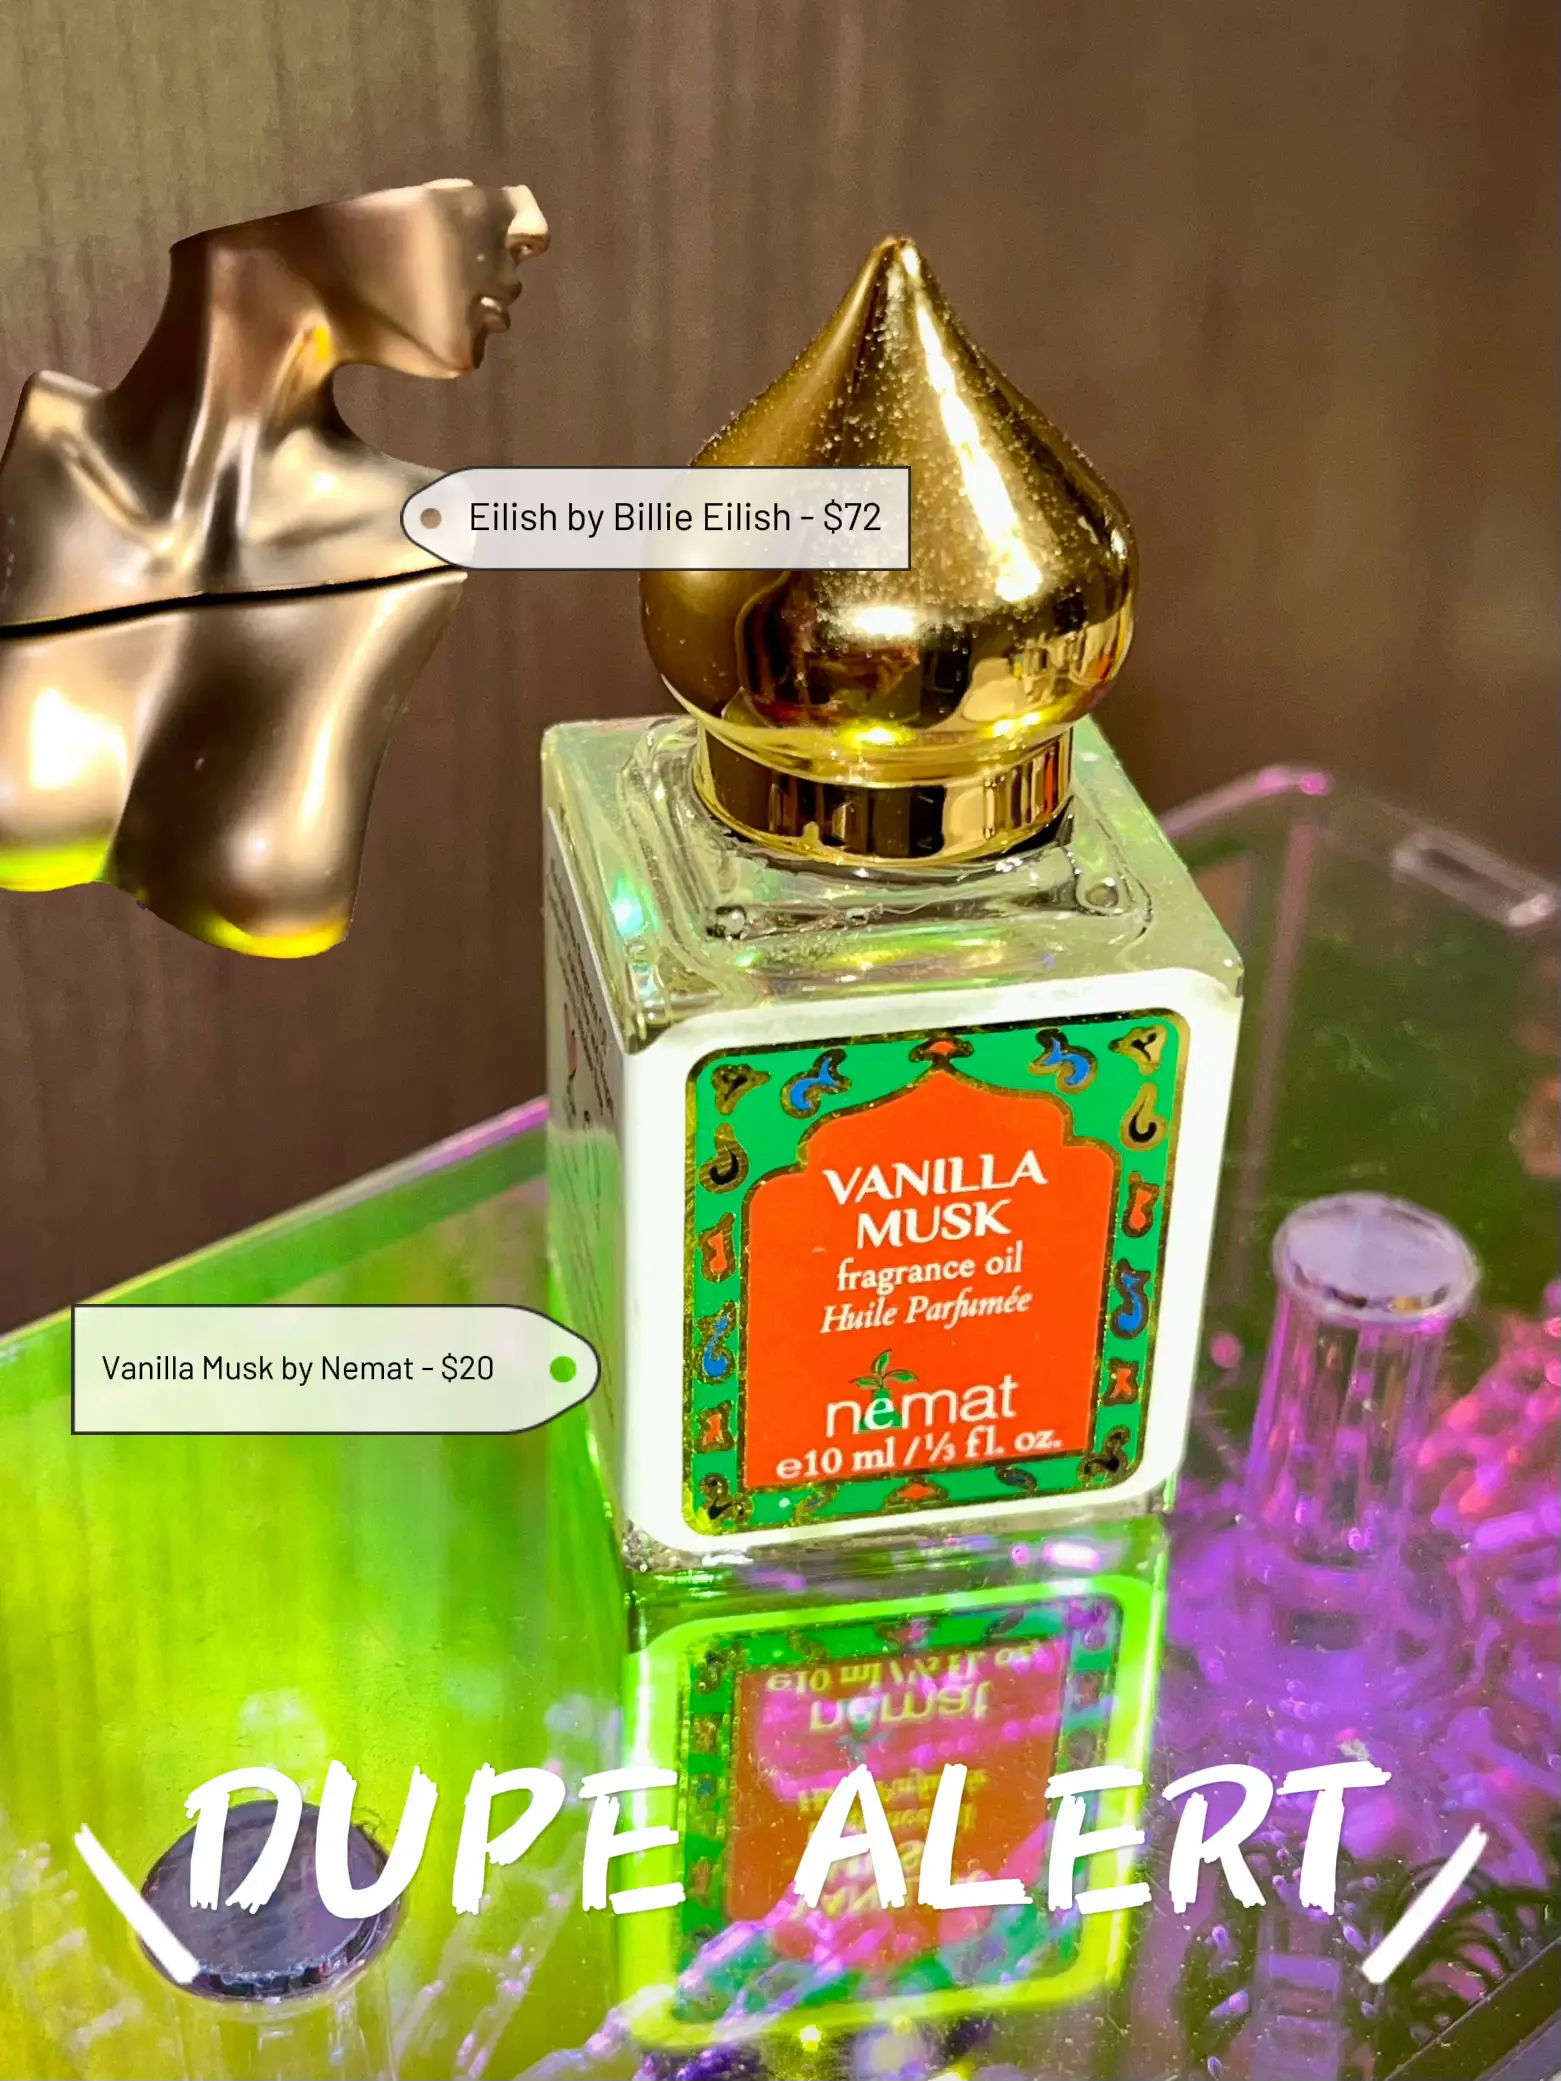 Nemat Vanilla Musk Oil for long-lasting fragrance - Lemon8 Search